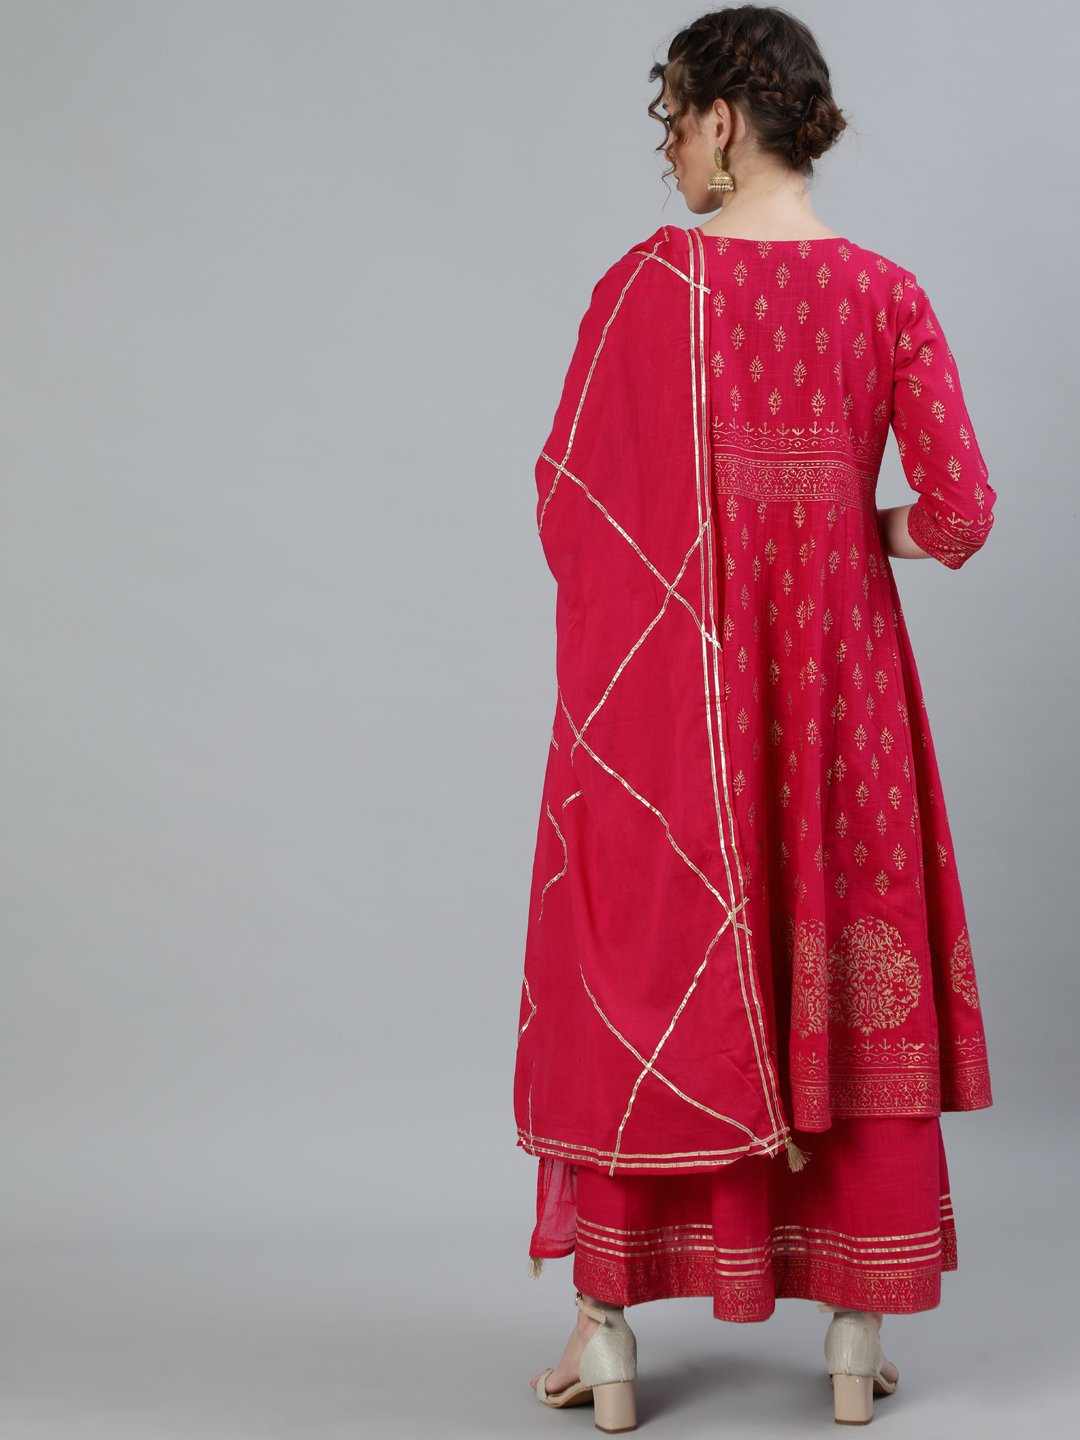 Ishin Women's Pink Gota Patti Anarkali Jacket Kurta With Dupatta